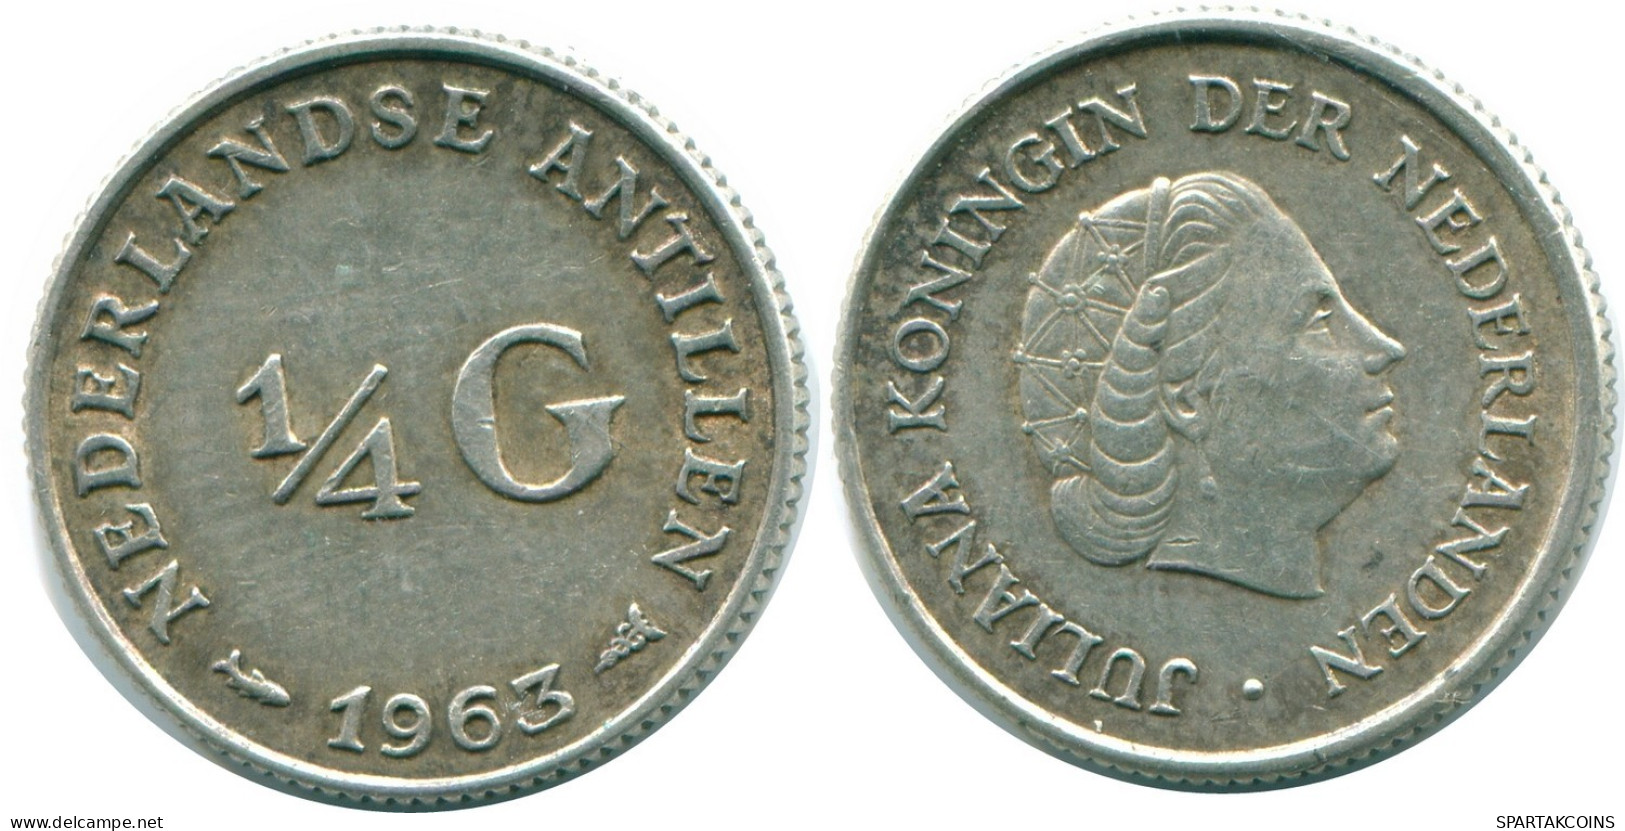 1/4 GULDEN 1963 NIEDERLÄNDISCHE ANTILLEN SILBER Koloniale Münze #NL11256.4.D.A - Antilles Néerlandaises